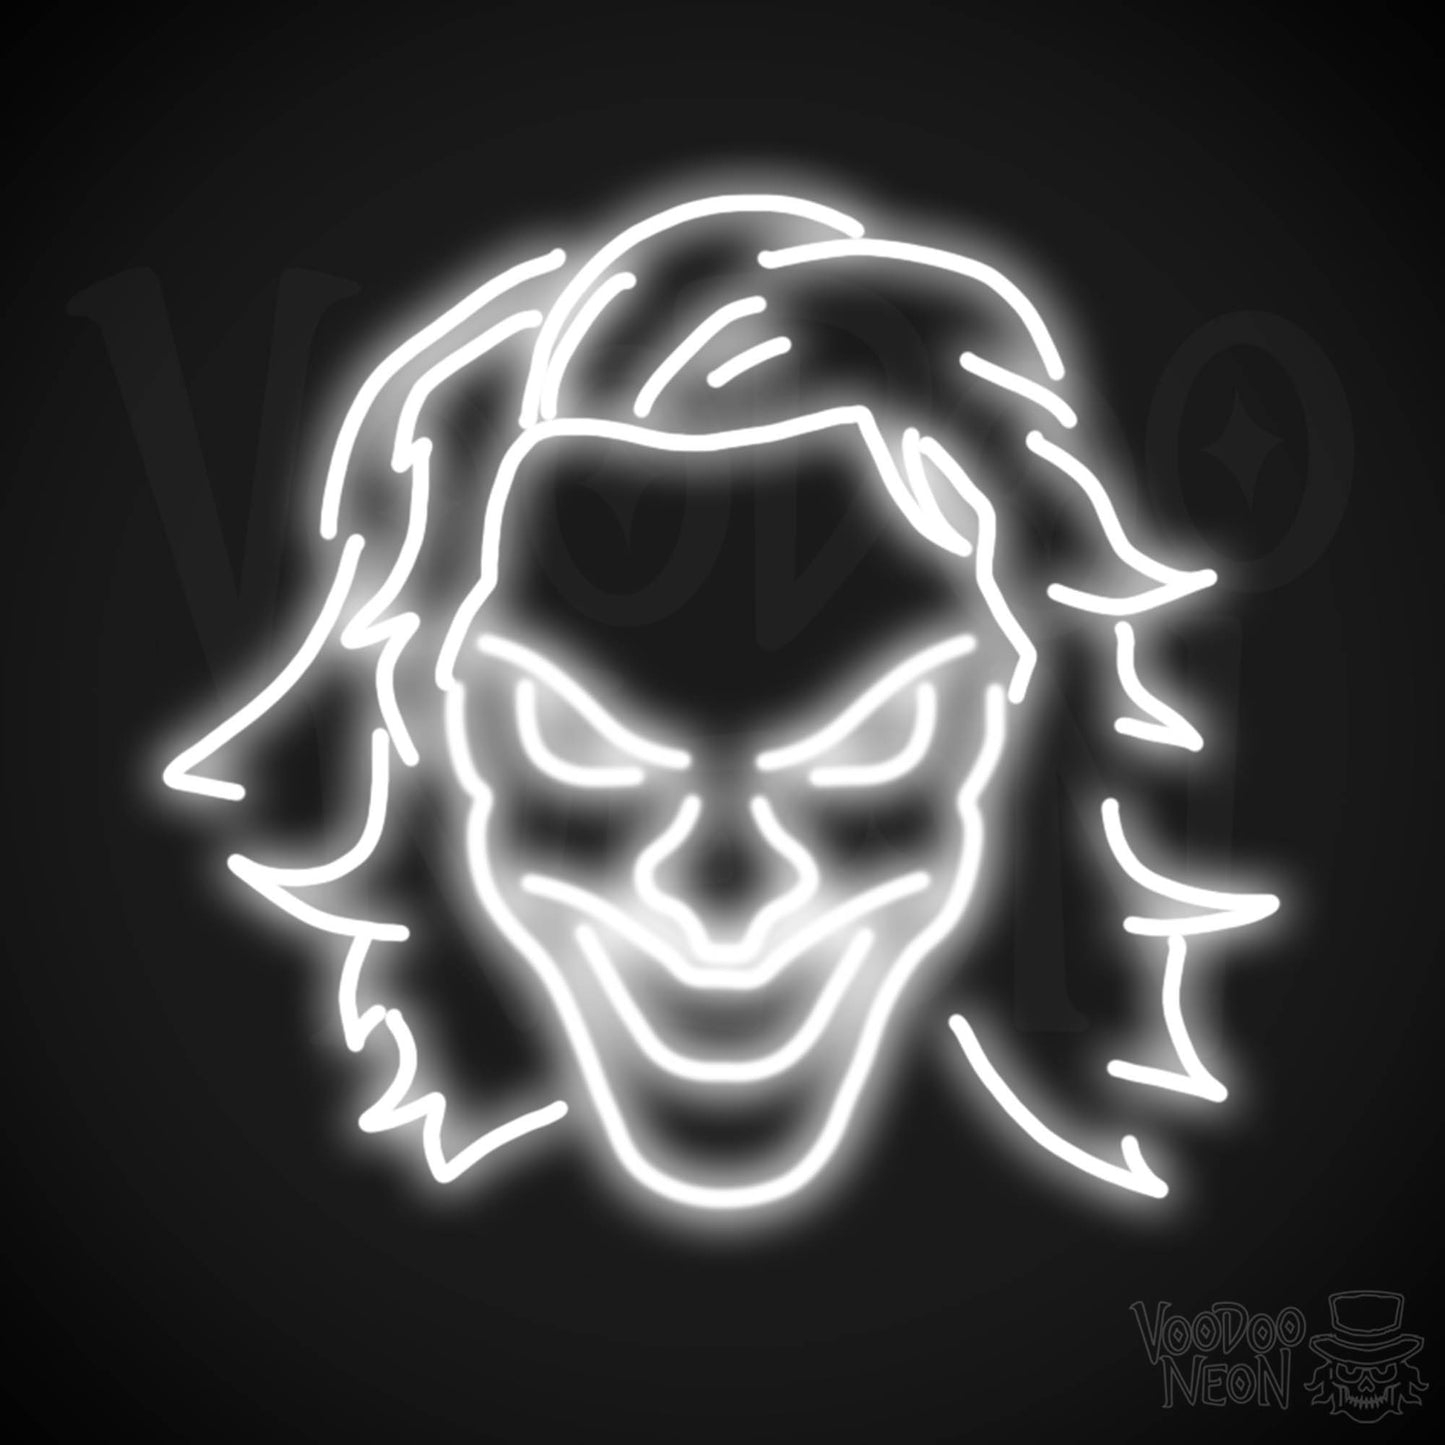 Joker Neon Sign - Neon Joker Sign - Joker LED Wall Art - Color White